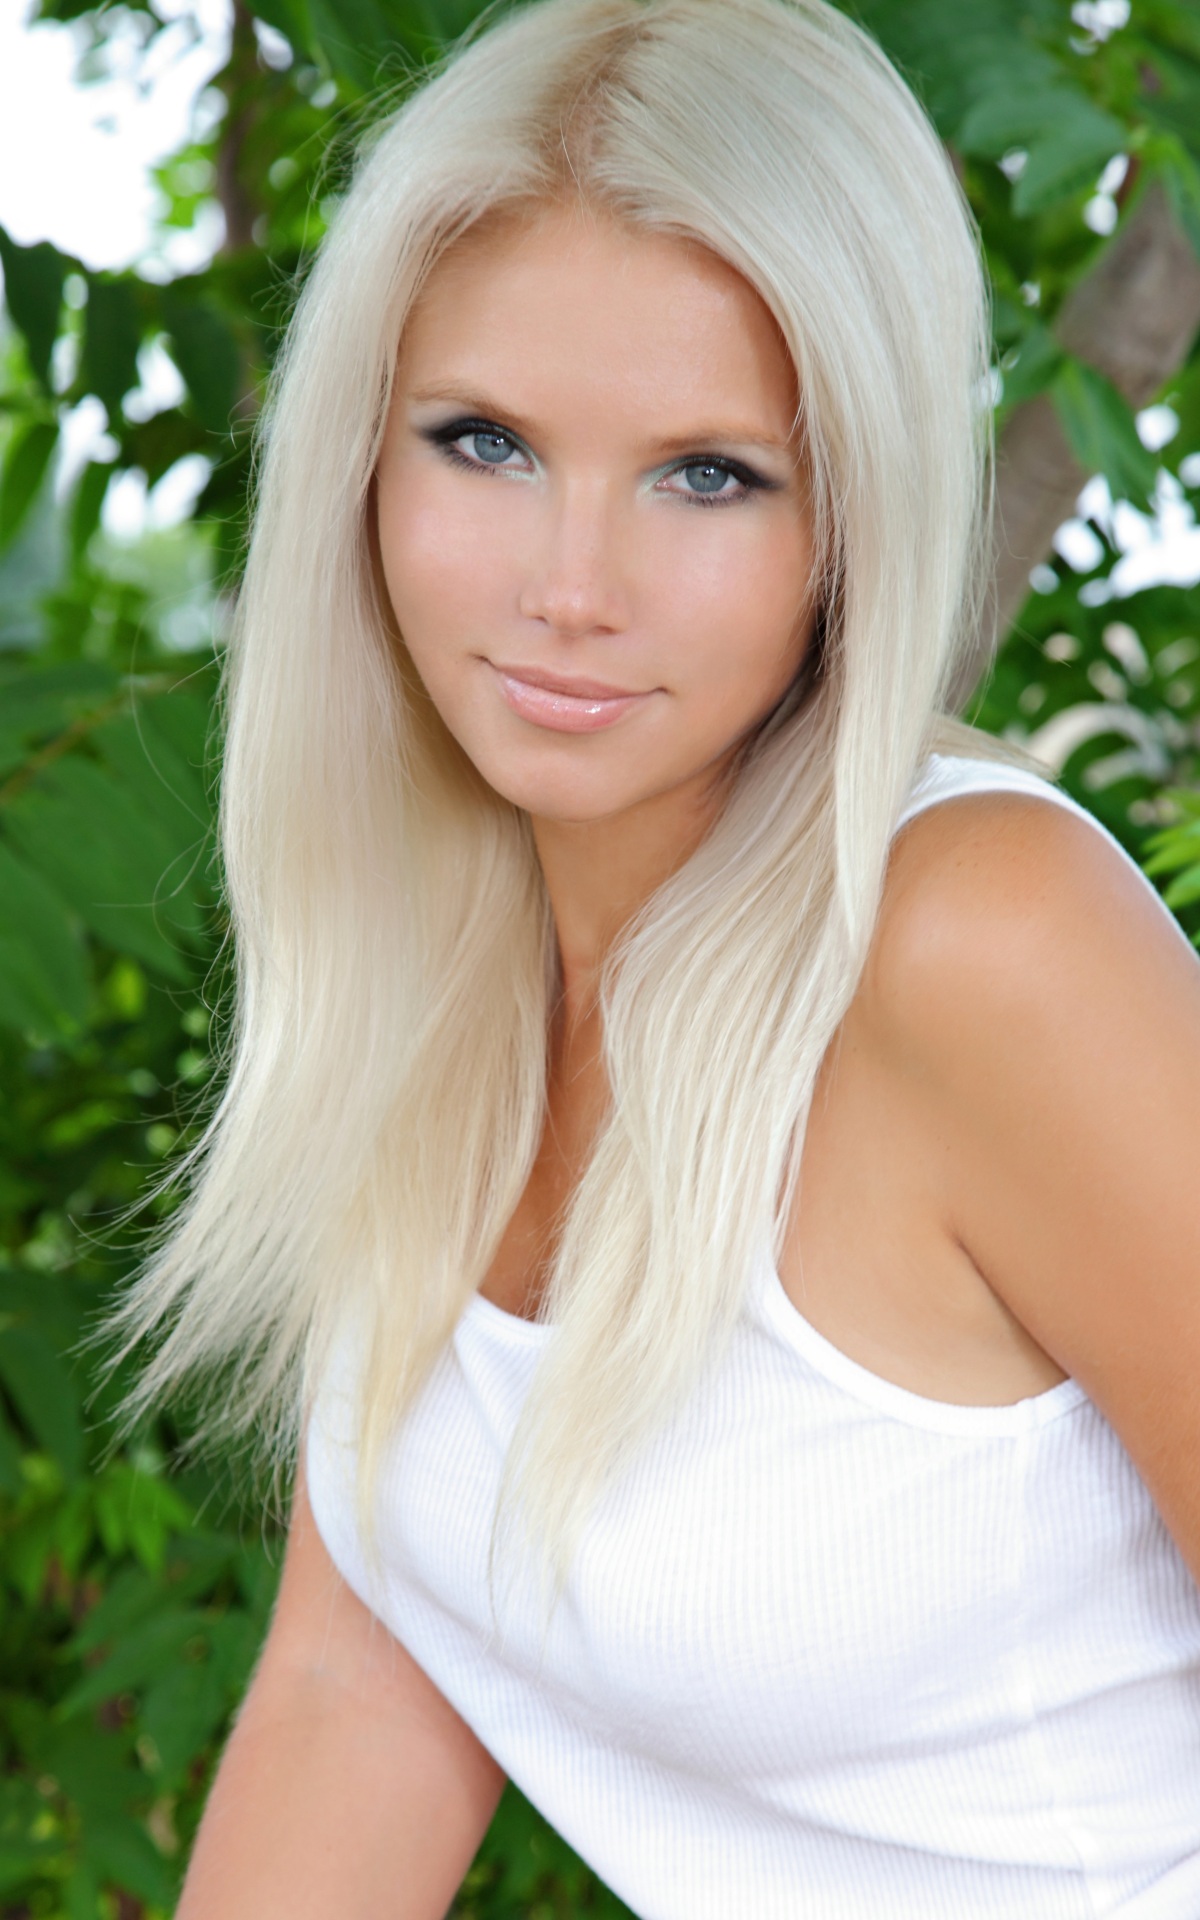 Эротика красивой блондинки Katerina на природе (20 фото) » Eroweek - фото  эротика онлайн с красивыми девушками. Интимные фотографии моделей